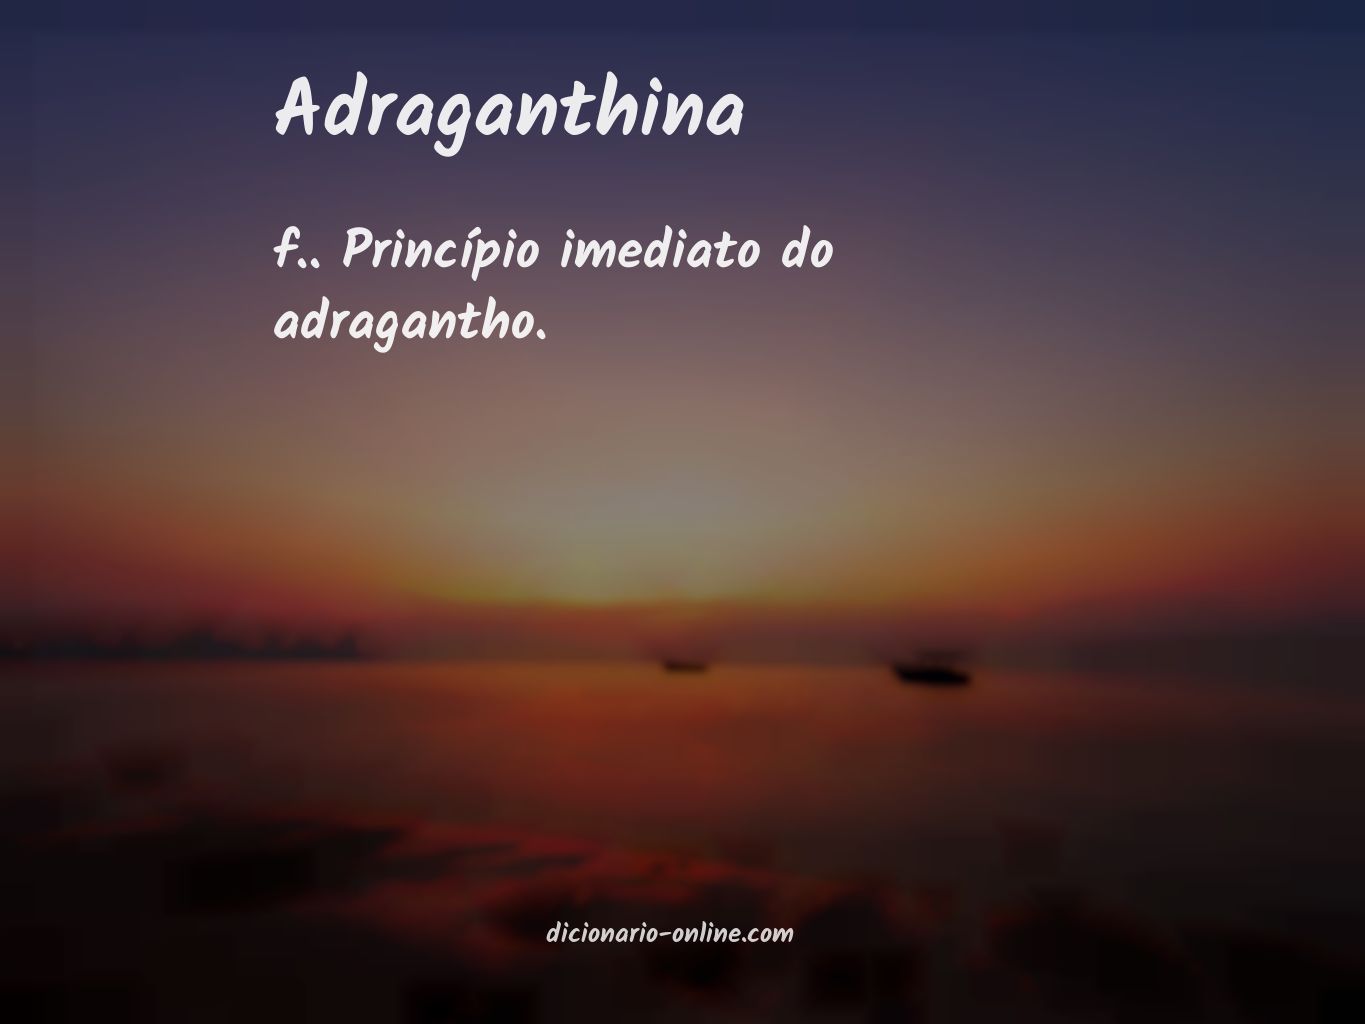 Significado de adraganthina